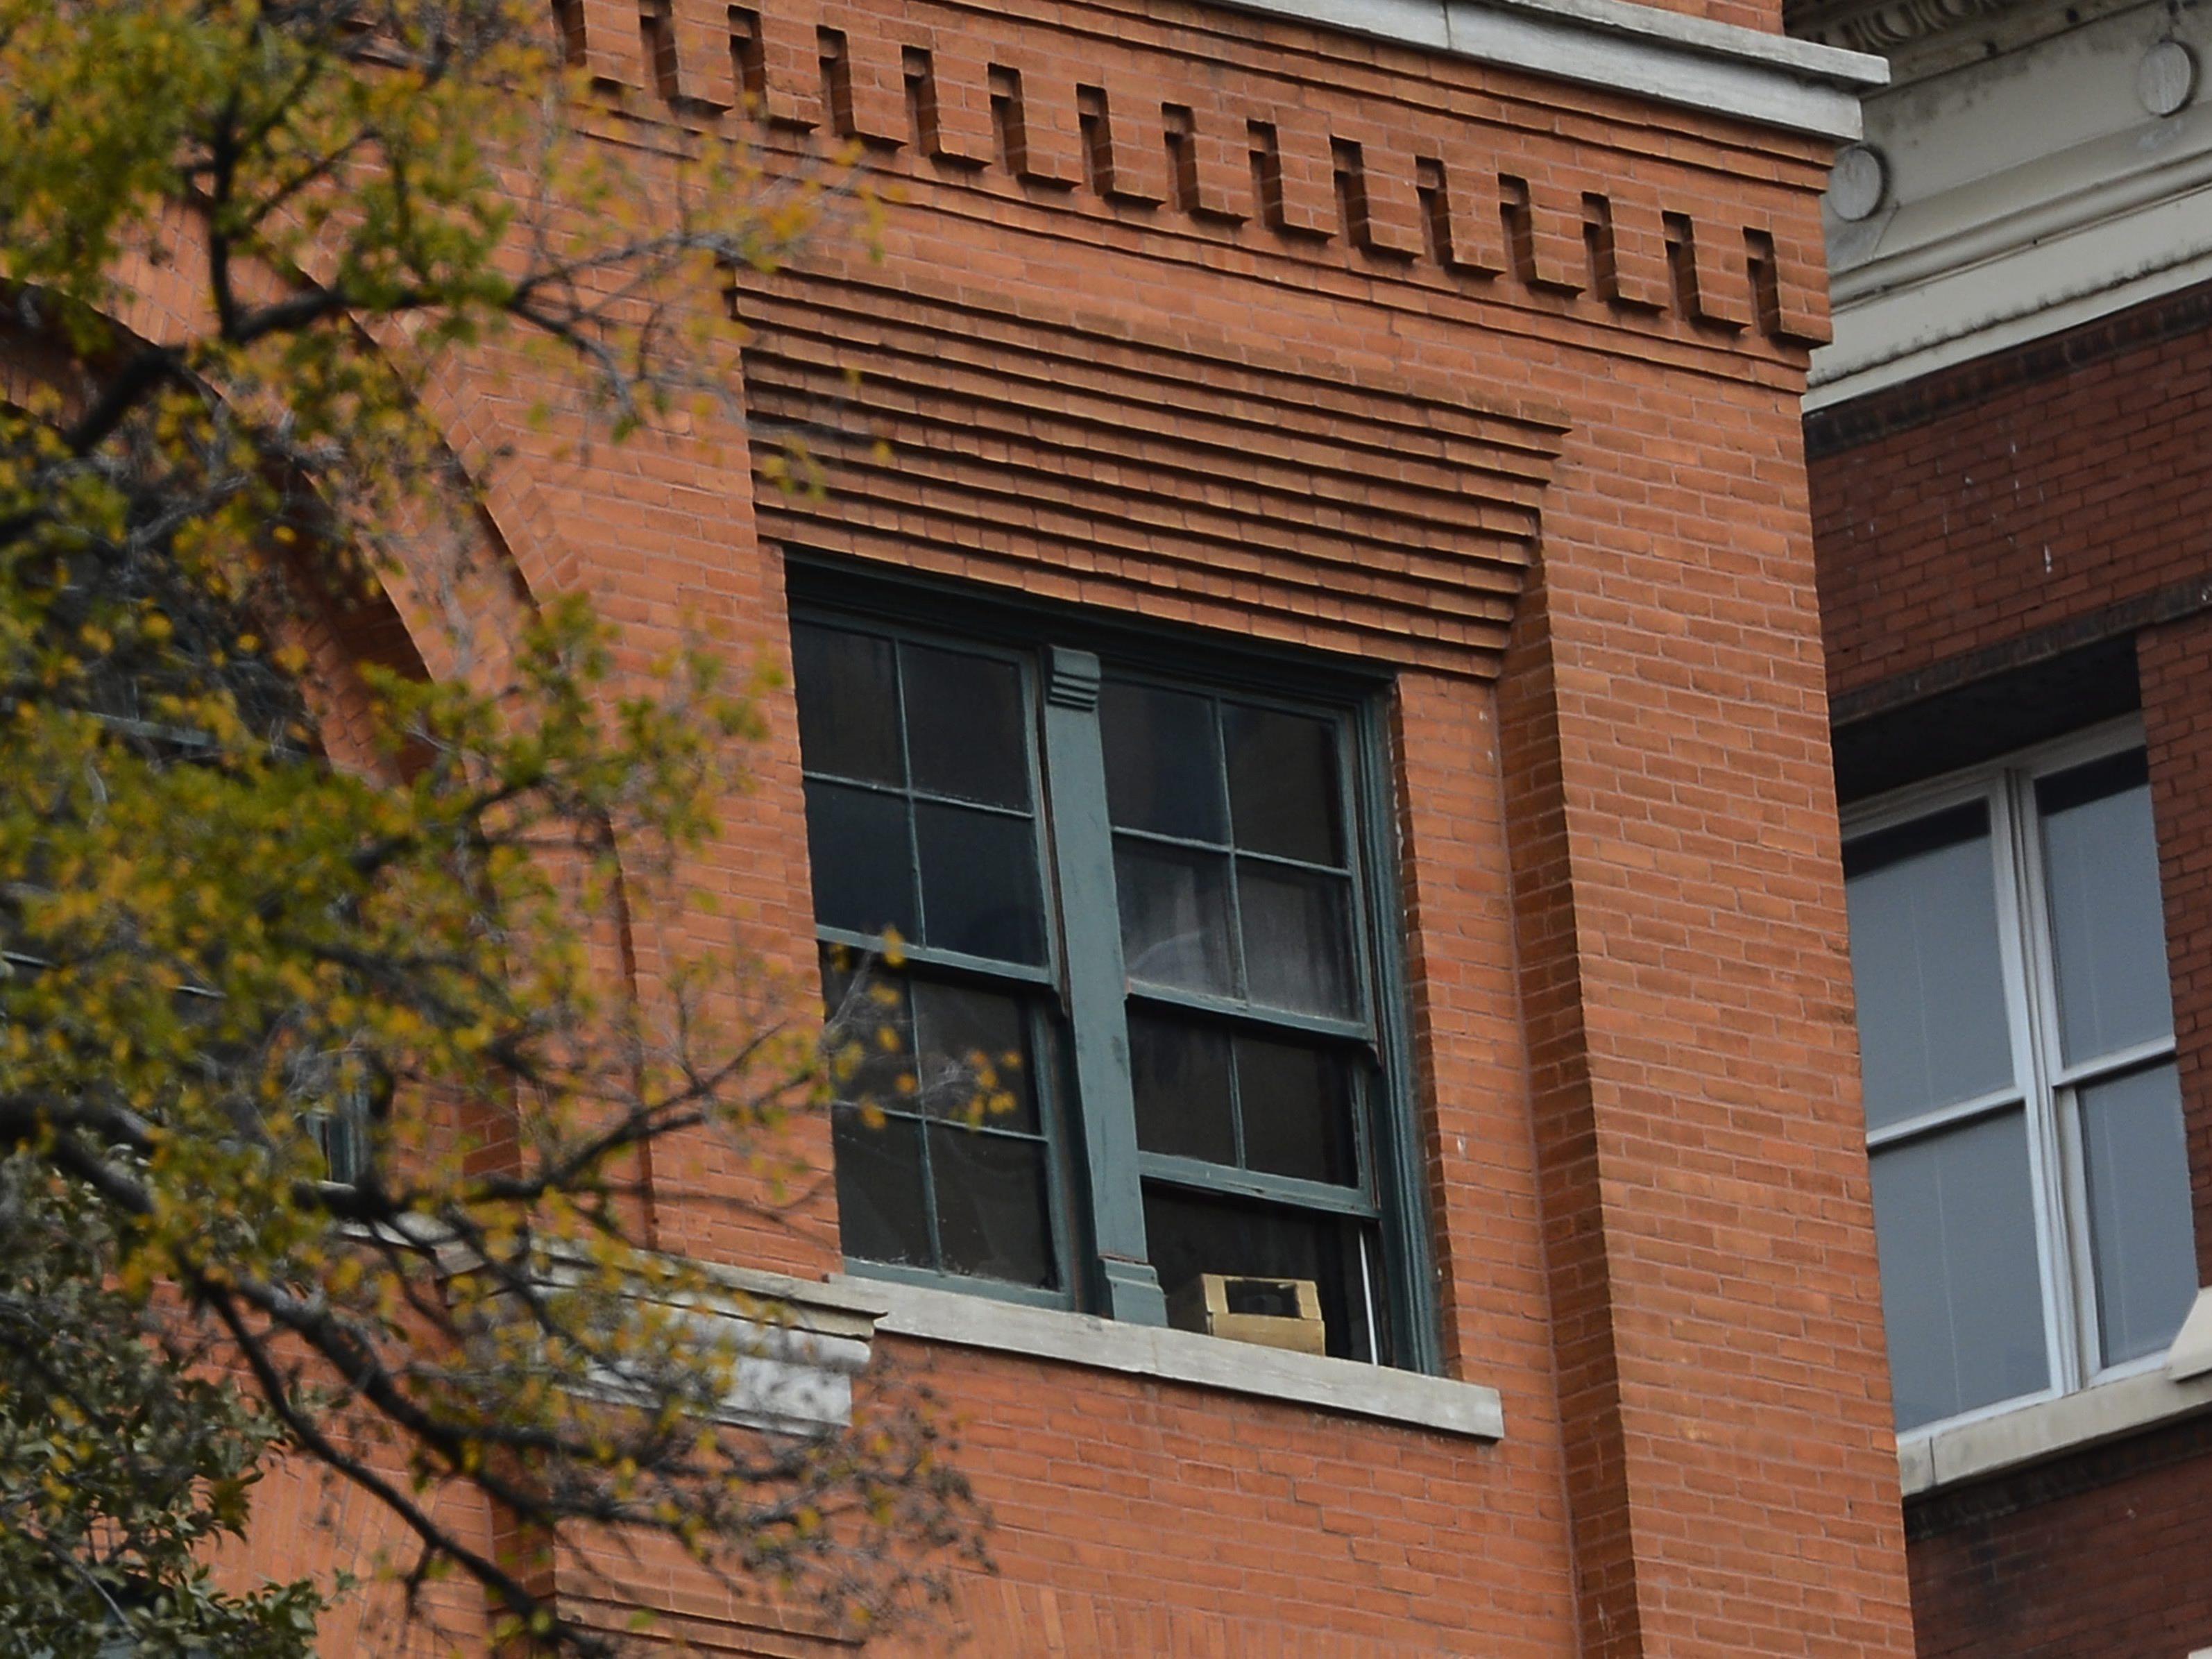 Der Blick vom "Sniper's perch": Aus diesem Fenster soll where Lee Harvey Oswald auf Kennedy geschossen haben.